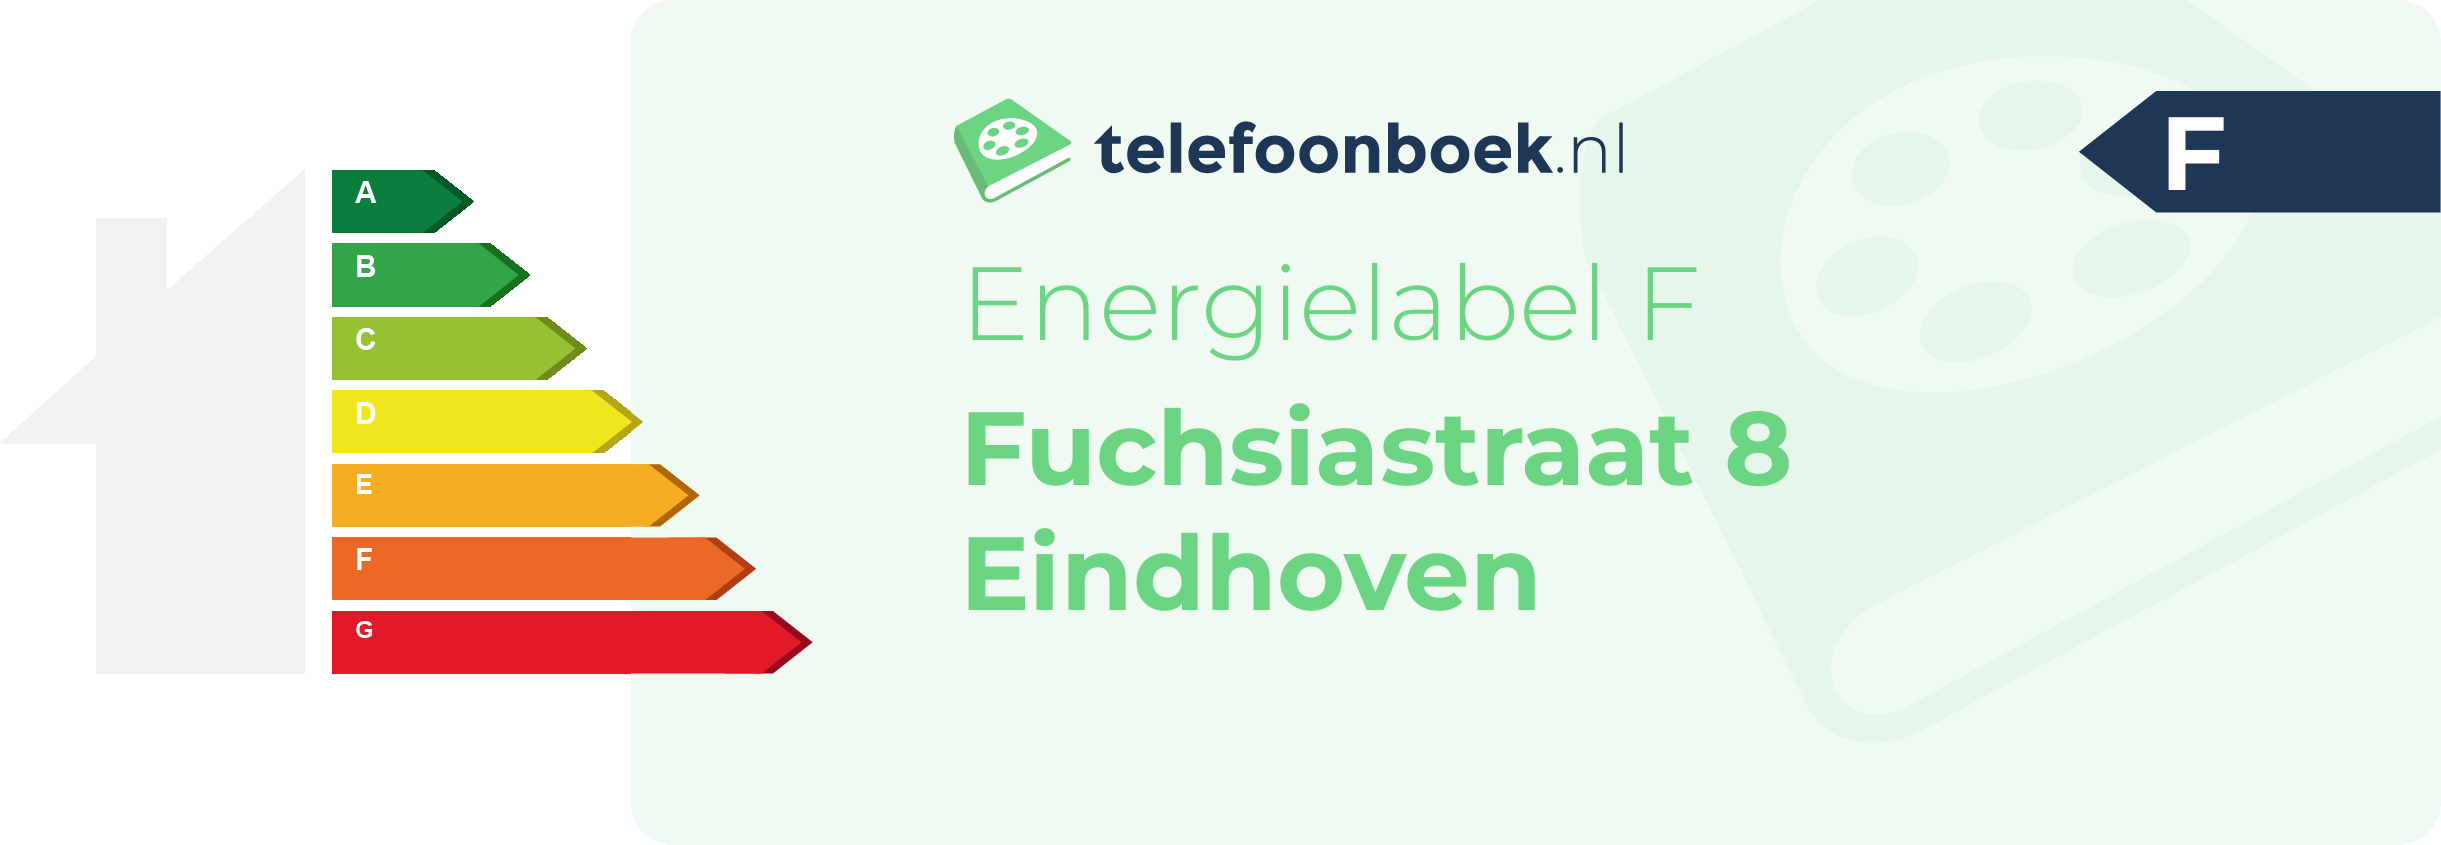 Energielabel Fuchsiastraat 8 Eindhoven